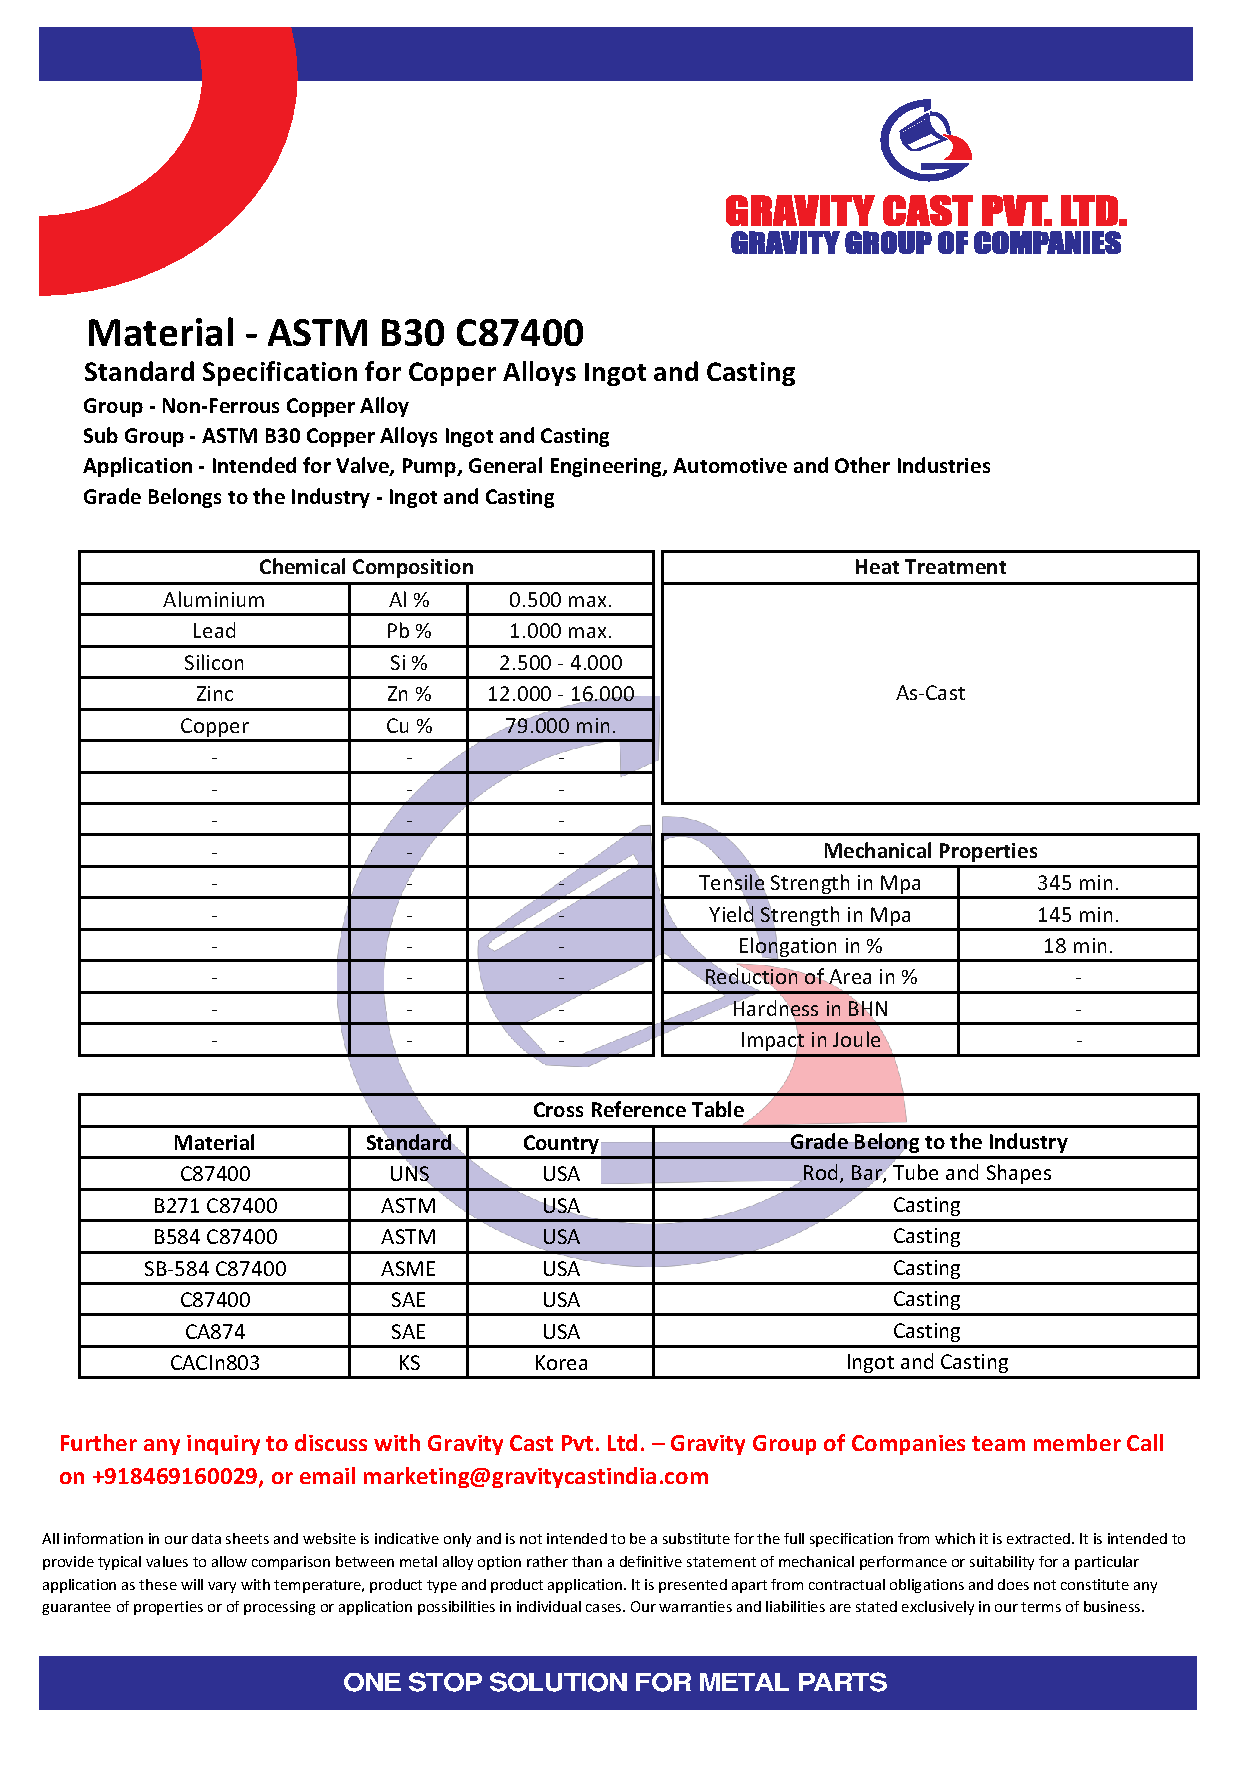 ASTM B30 C87400.pdf